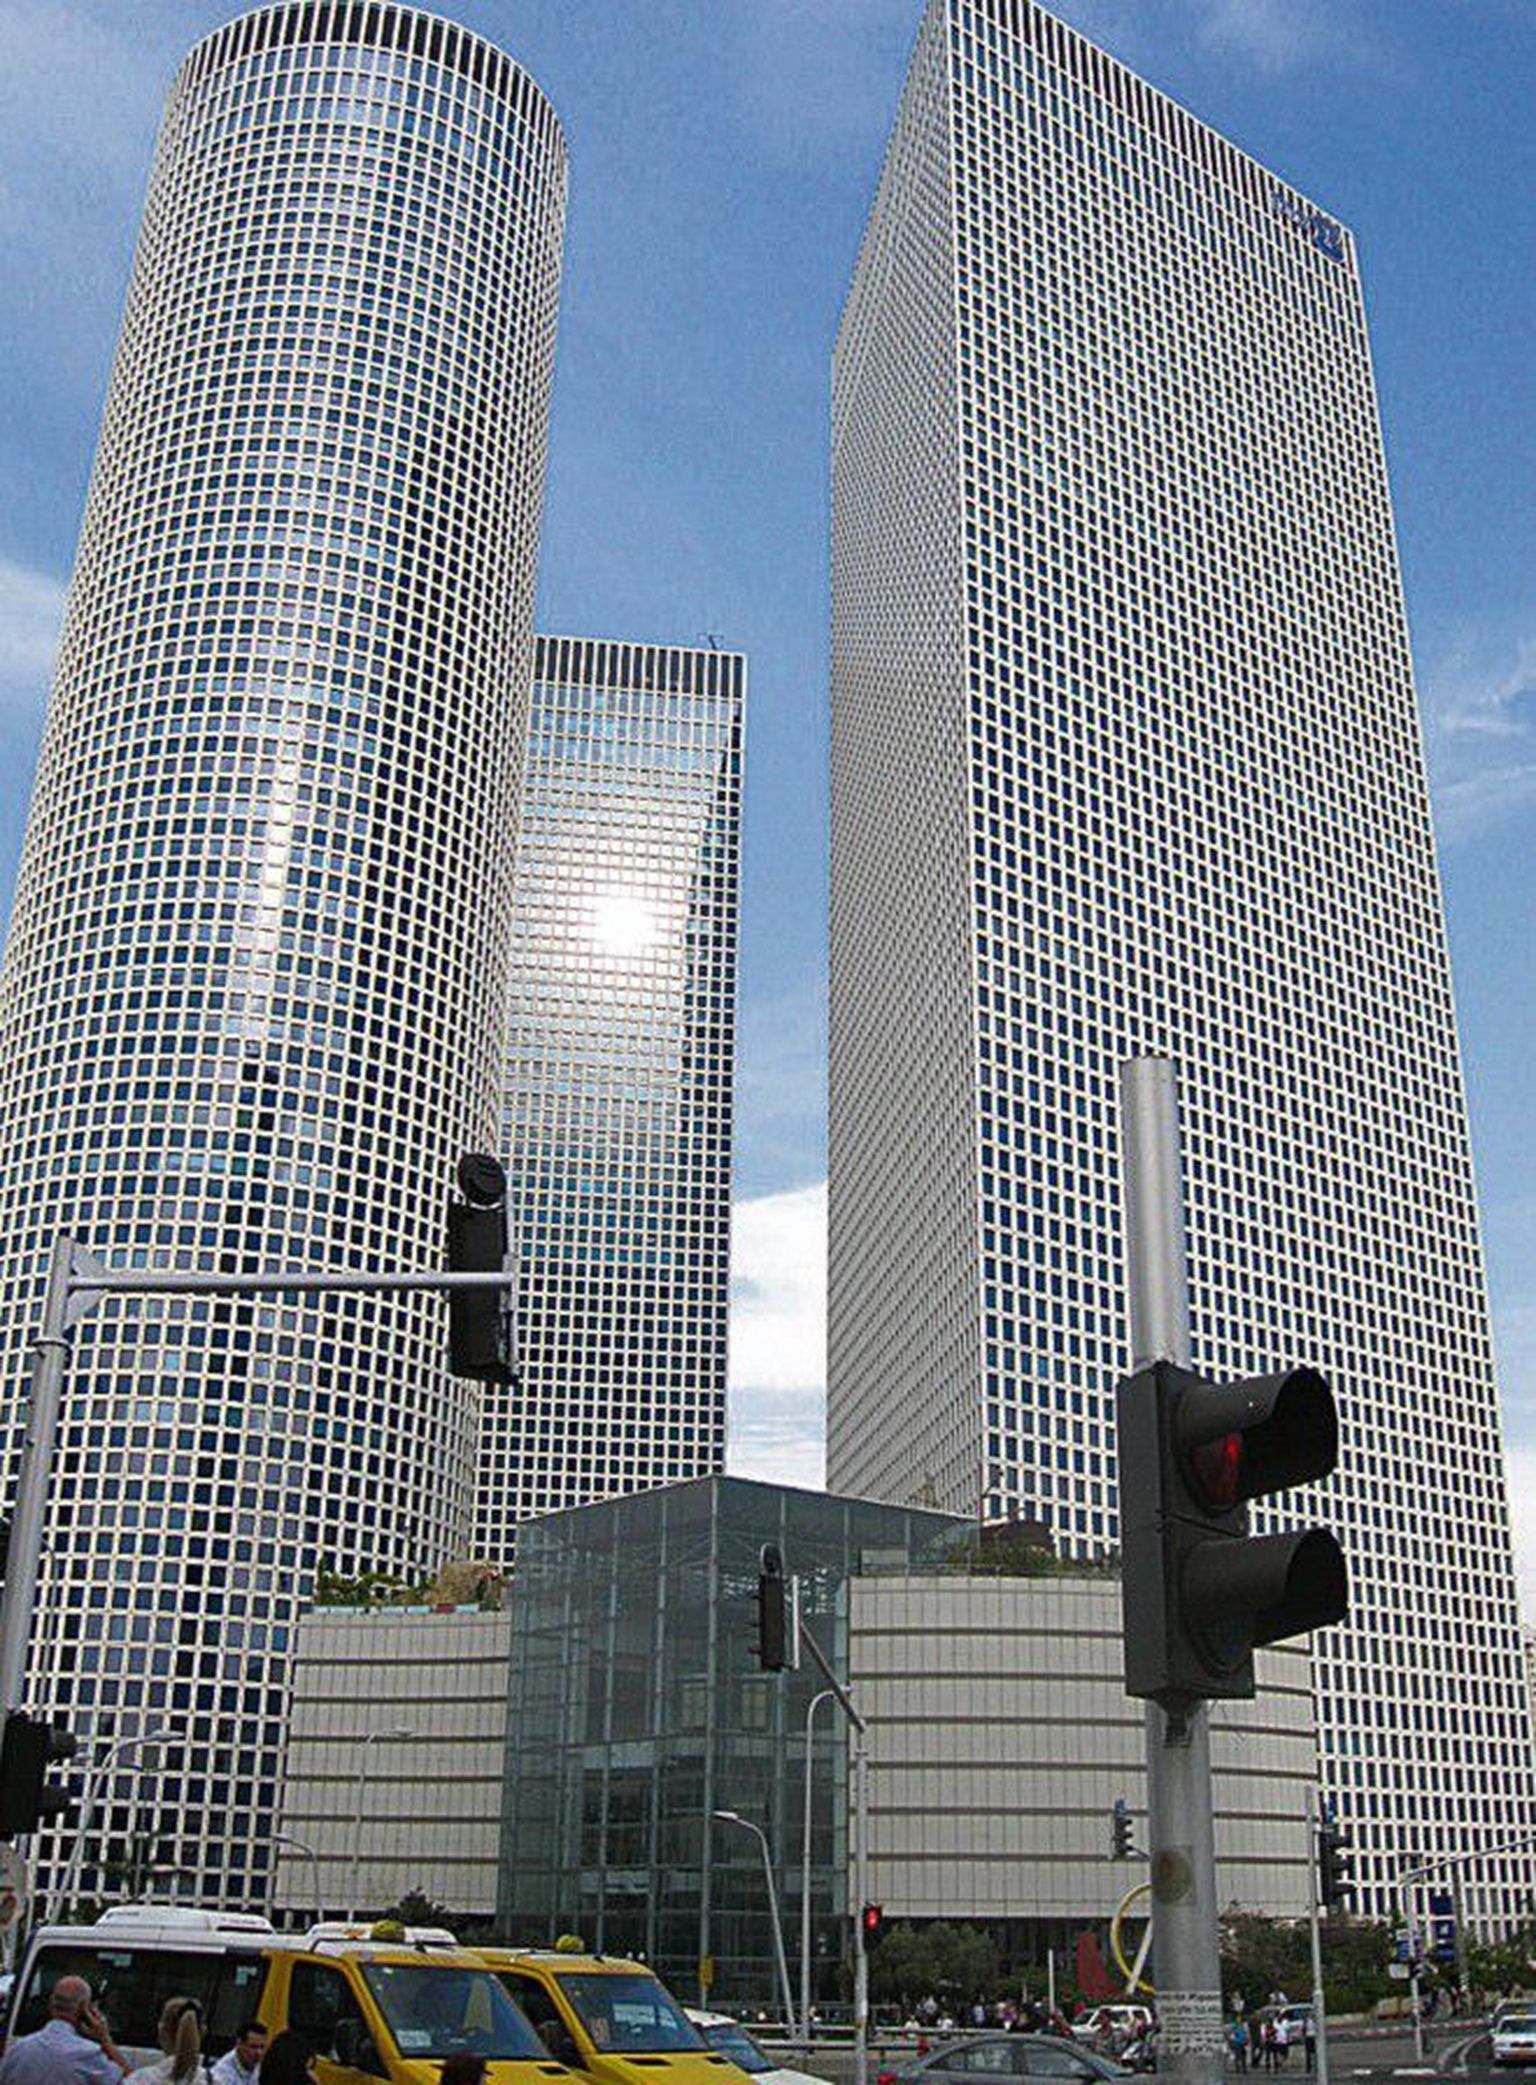 Kõrghoonete linn: Azrieli keskuse kolm torni on Tel Avivi kõrgeimad ehitised.